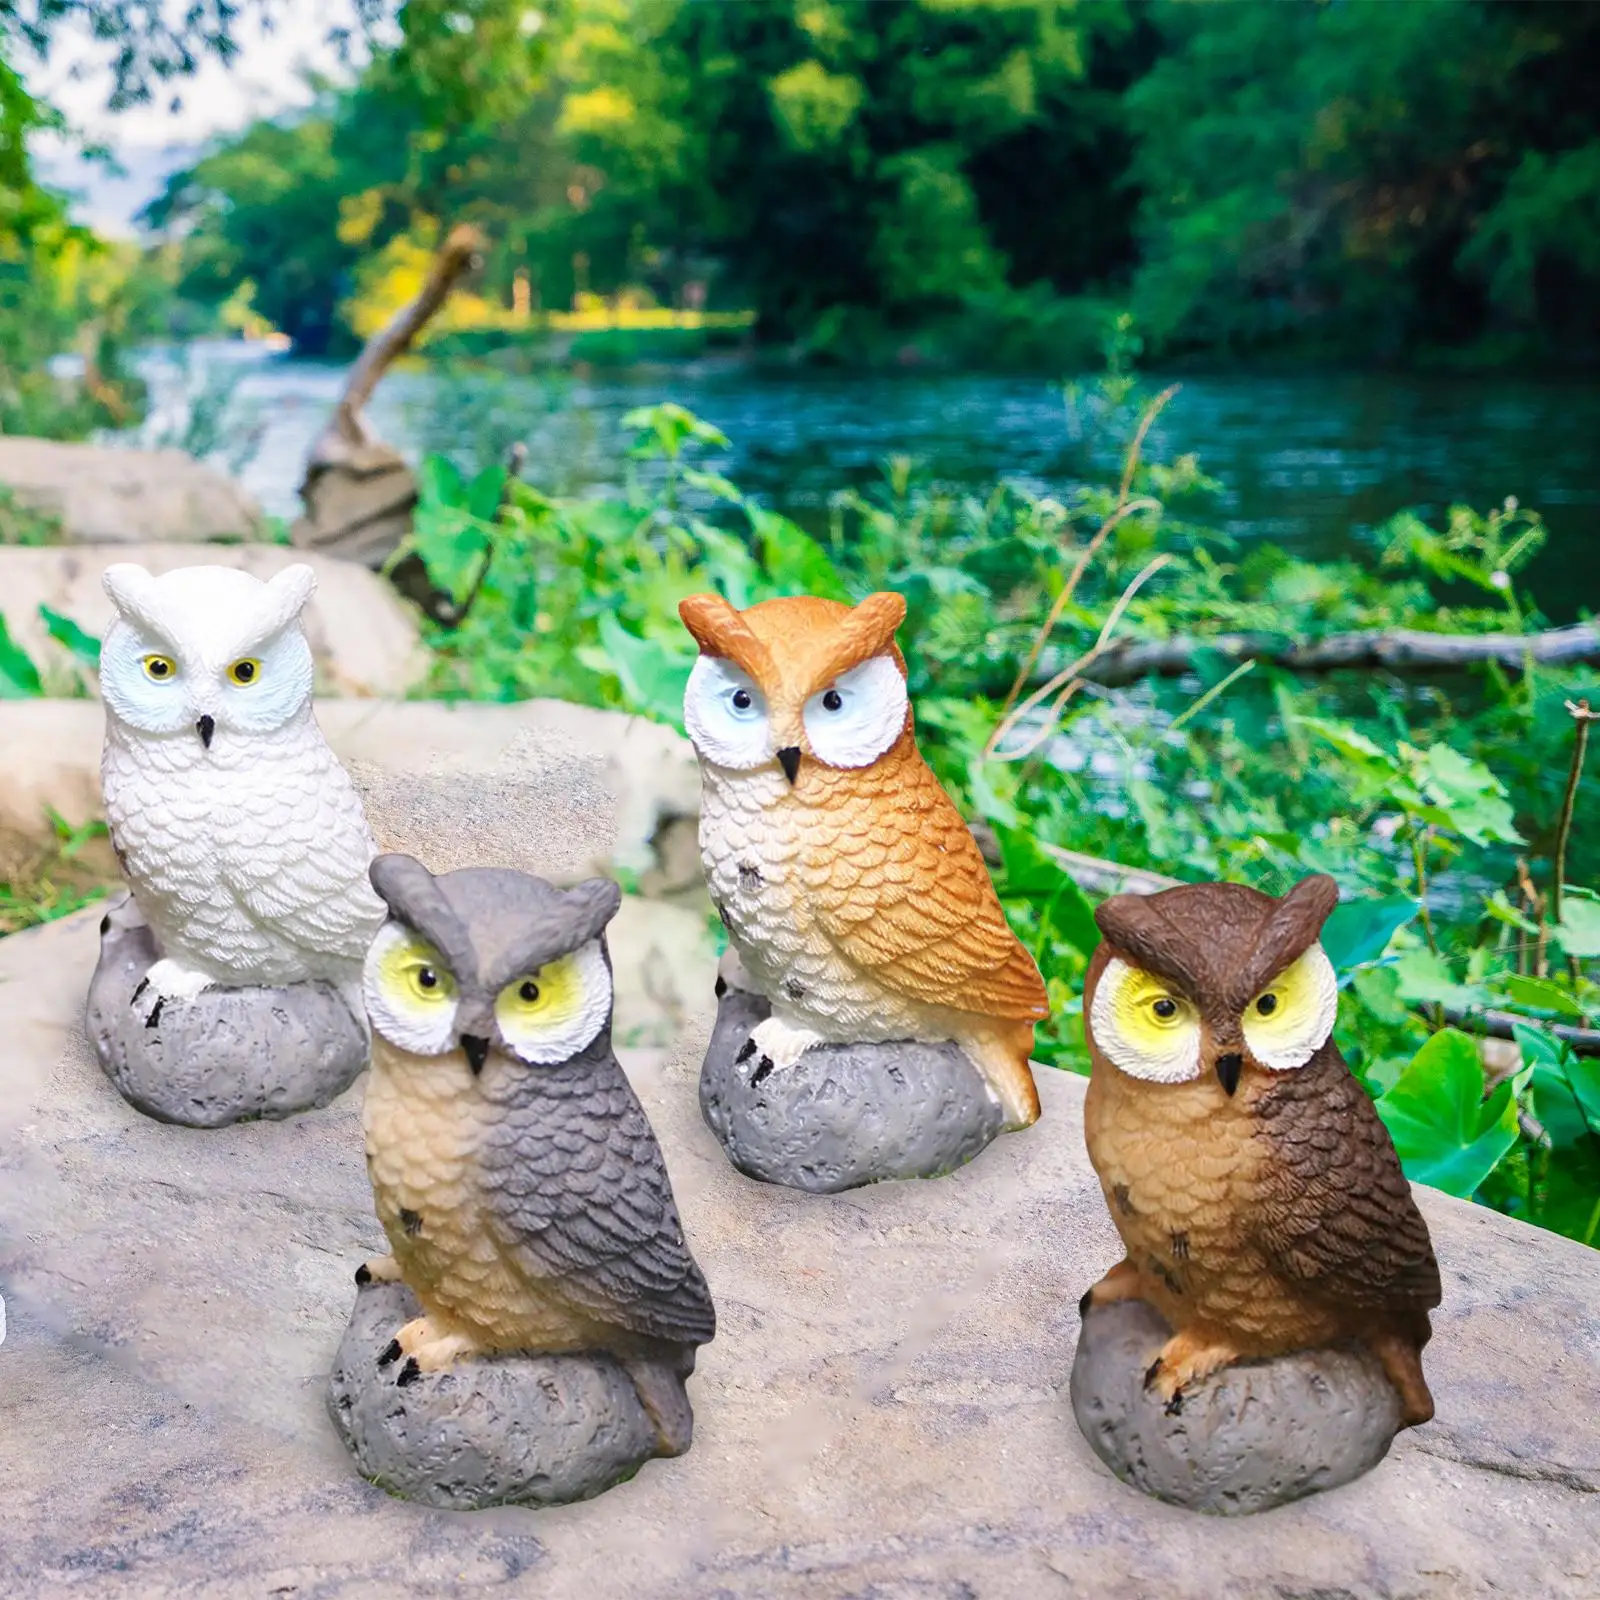 4x Смоляные миниатюрные фигурки птиц и миниатюрных сов для декора бонсай1